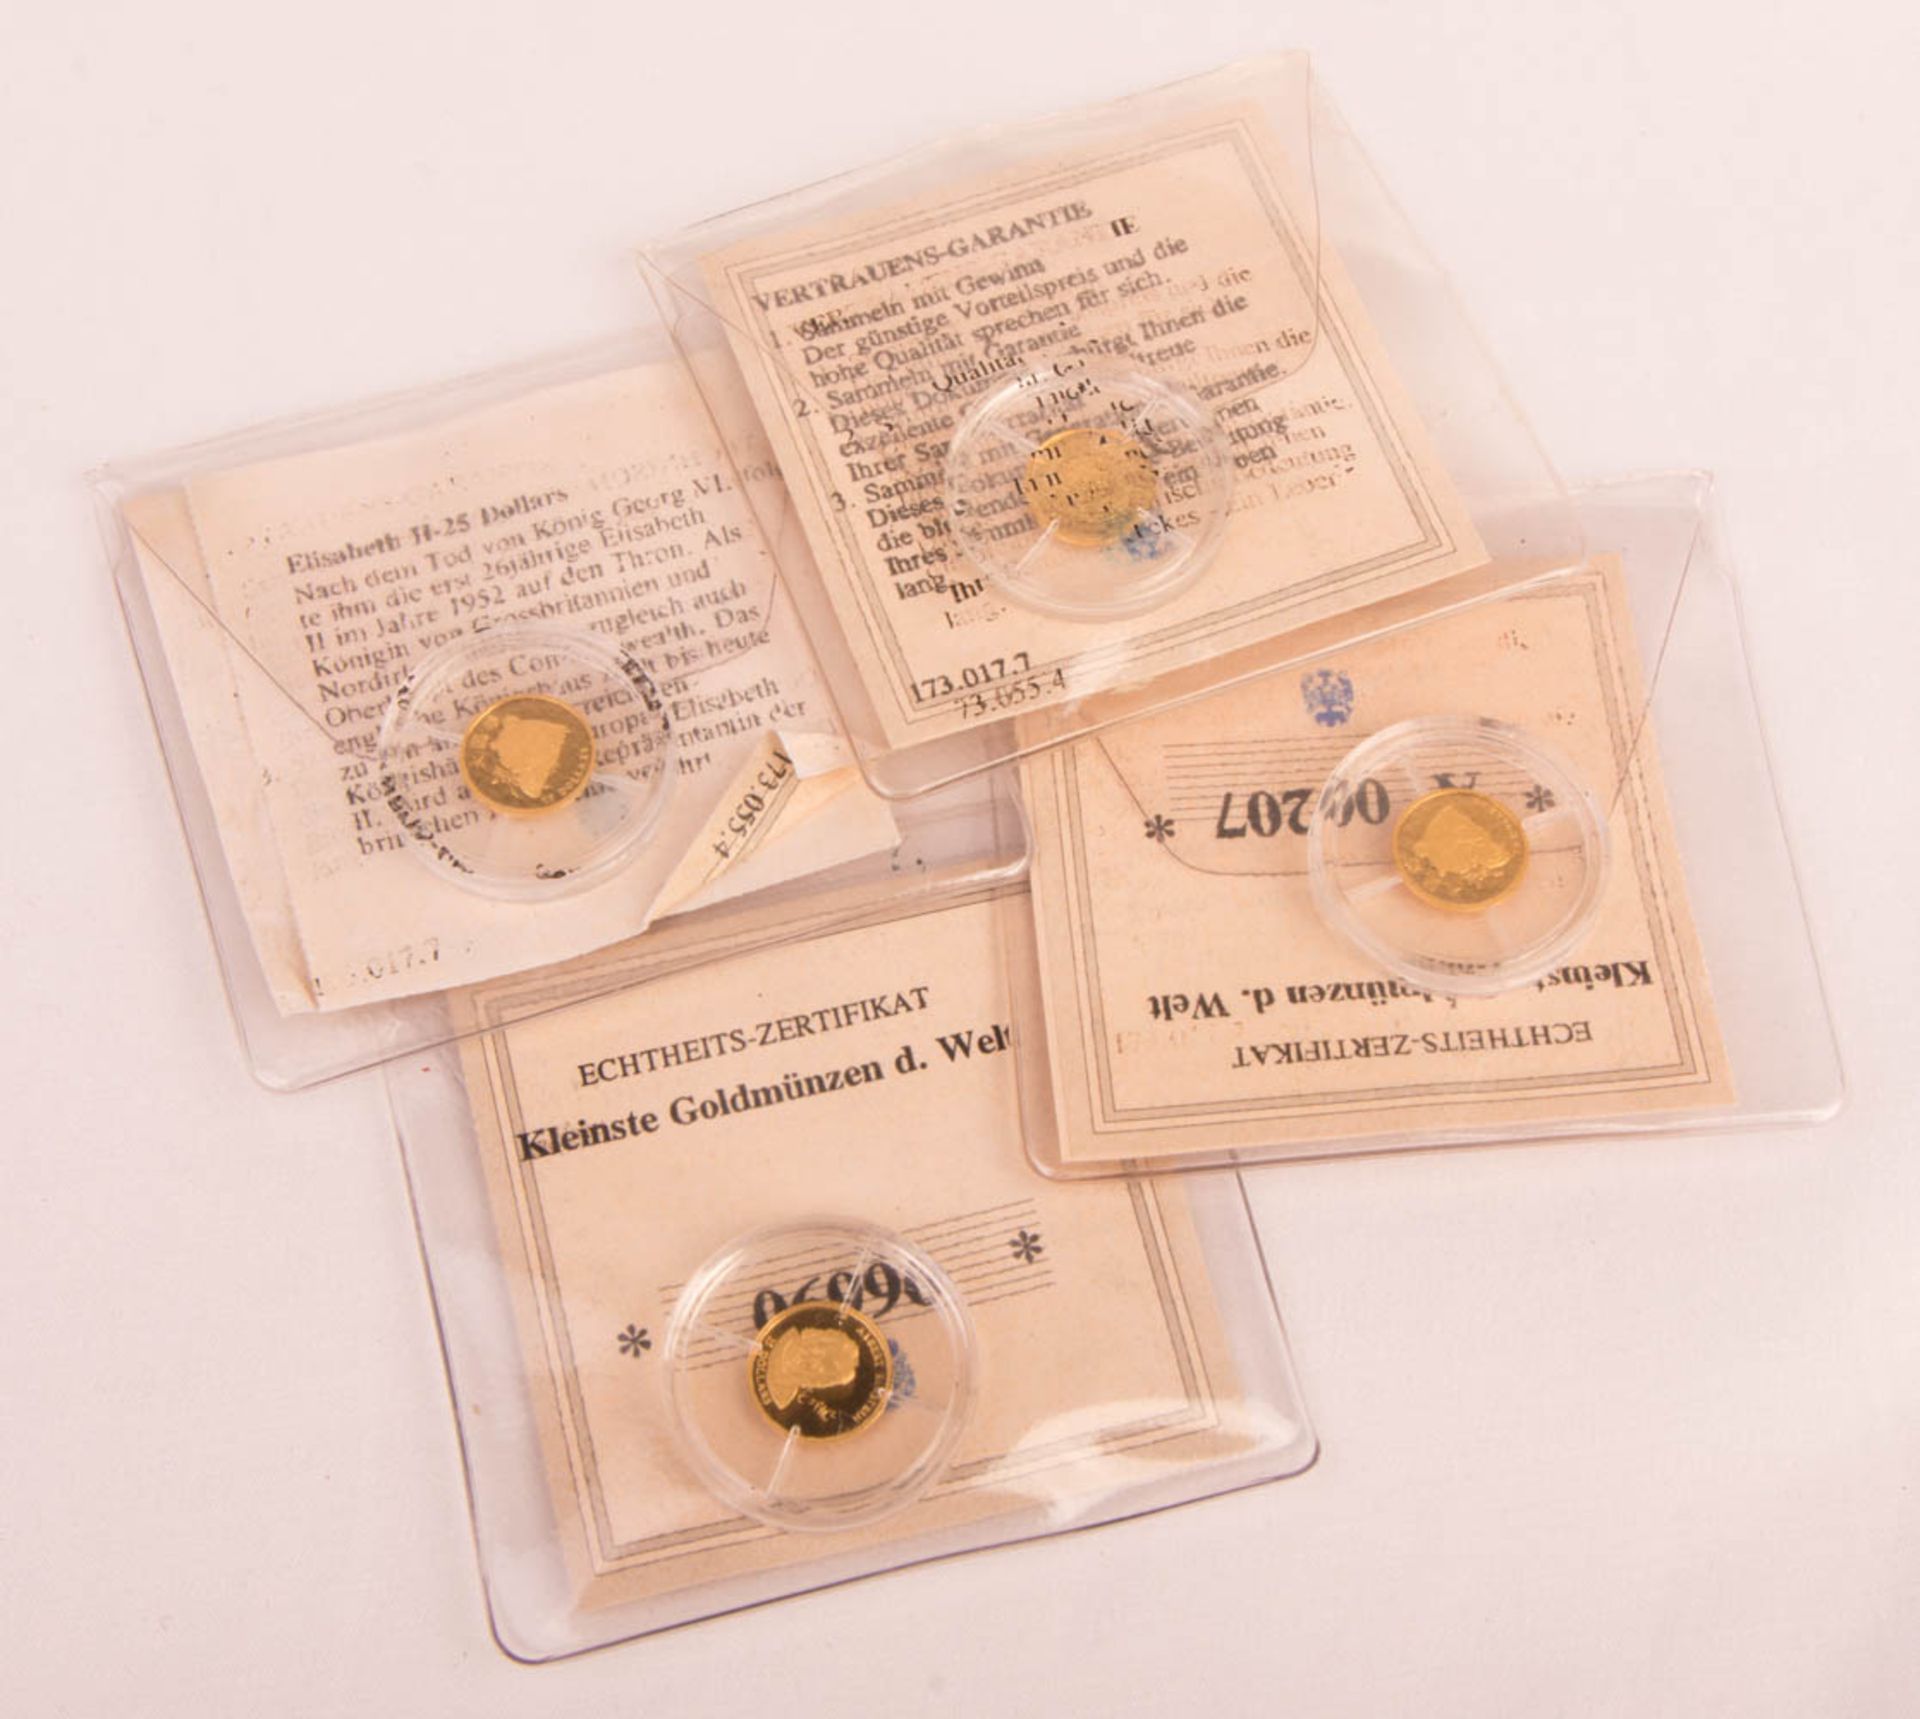 Vier Goldmünzen, 'Kleinste Goldmünzen der Welt'.